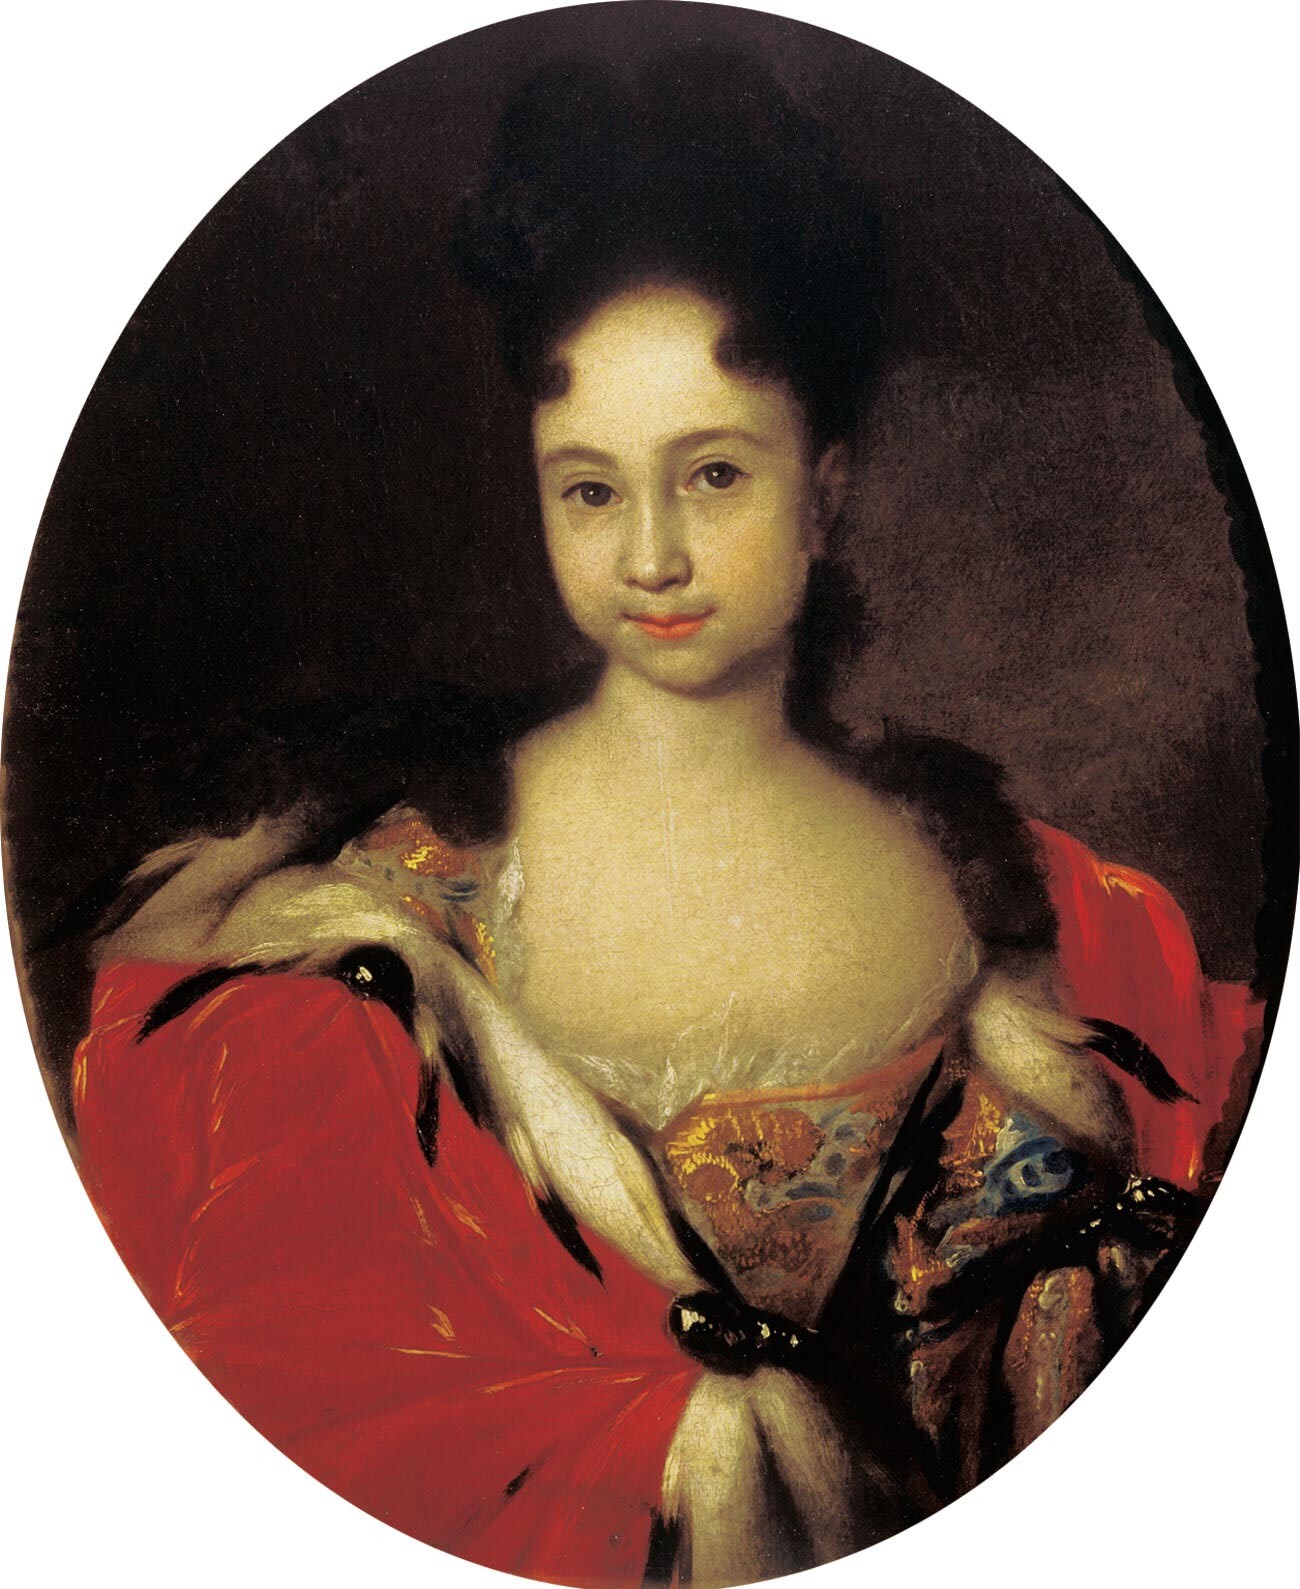 Anna im Jahr 1716. Auf dem Porträt ist Anna etwa sechs oder sieben Jahre alt, aber ihr Haar ist auf eine erwachsene Weise frisiert und sie ist wie eine erwachsene Dame gekleidet
